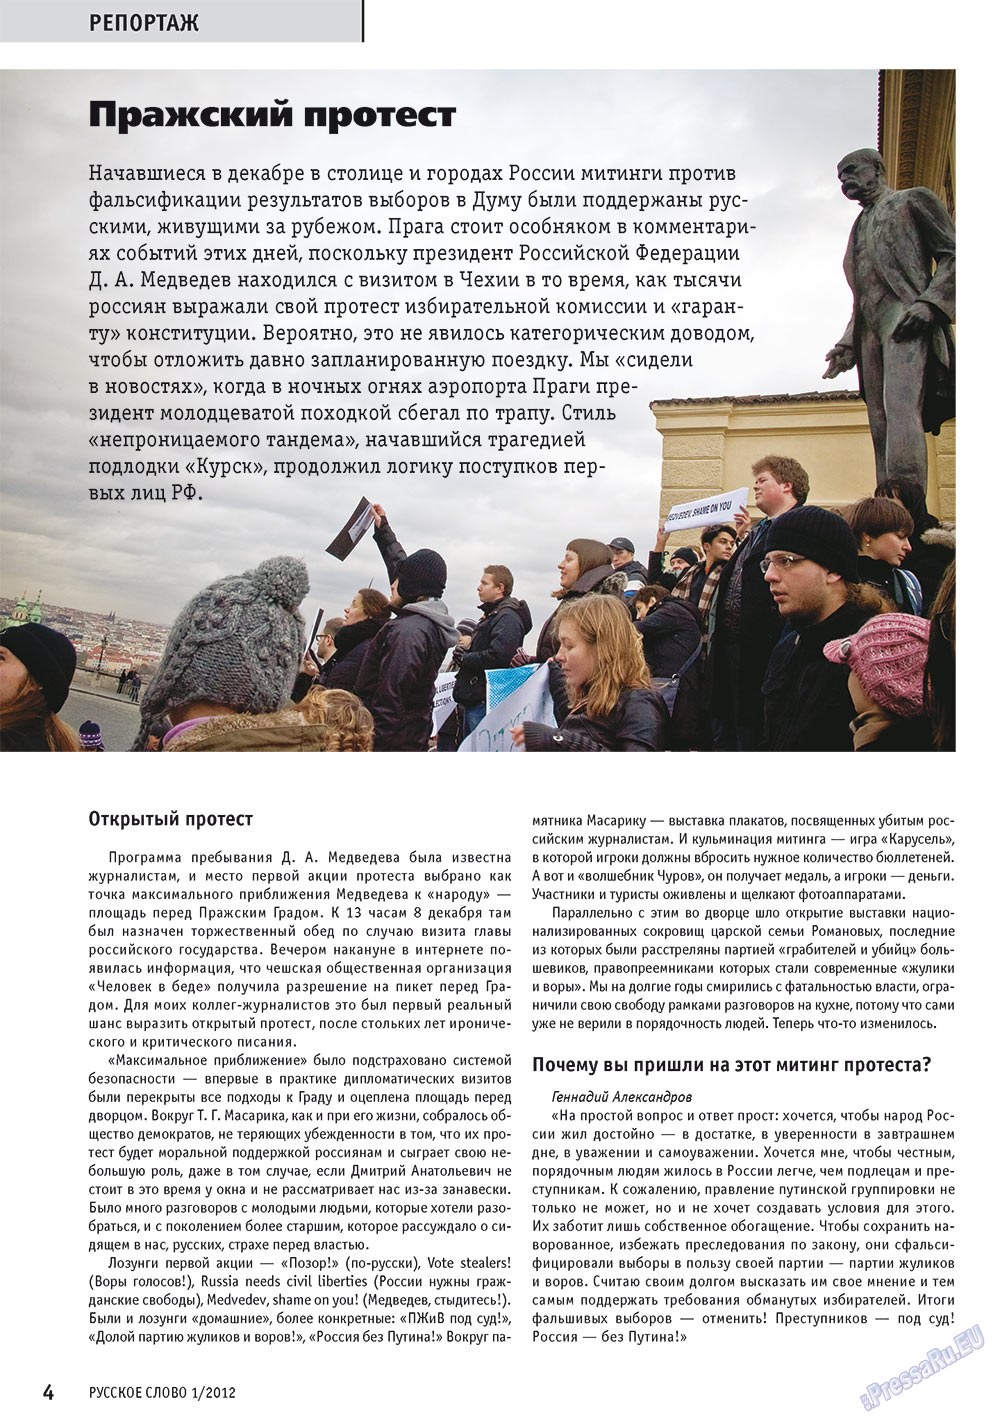 Русское слово, журнал. 2012 №1 стр.6